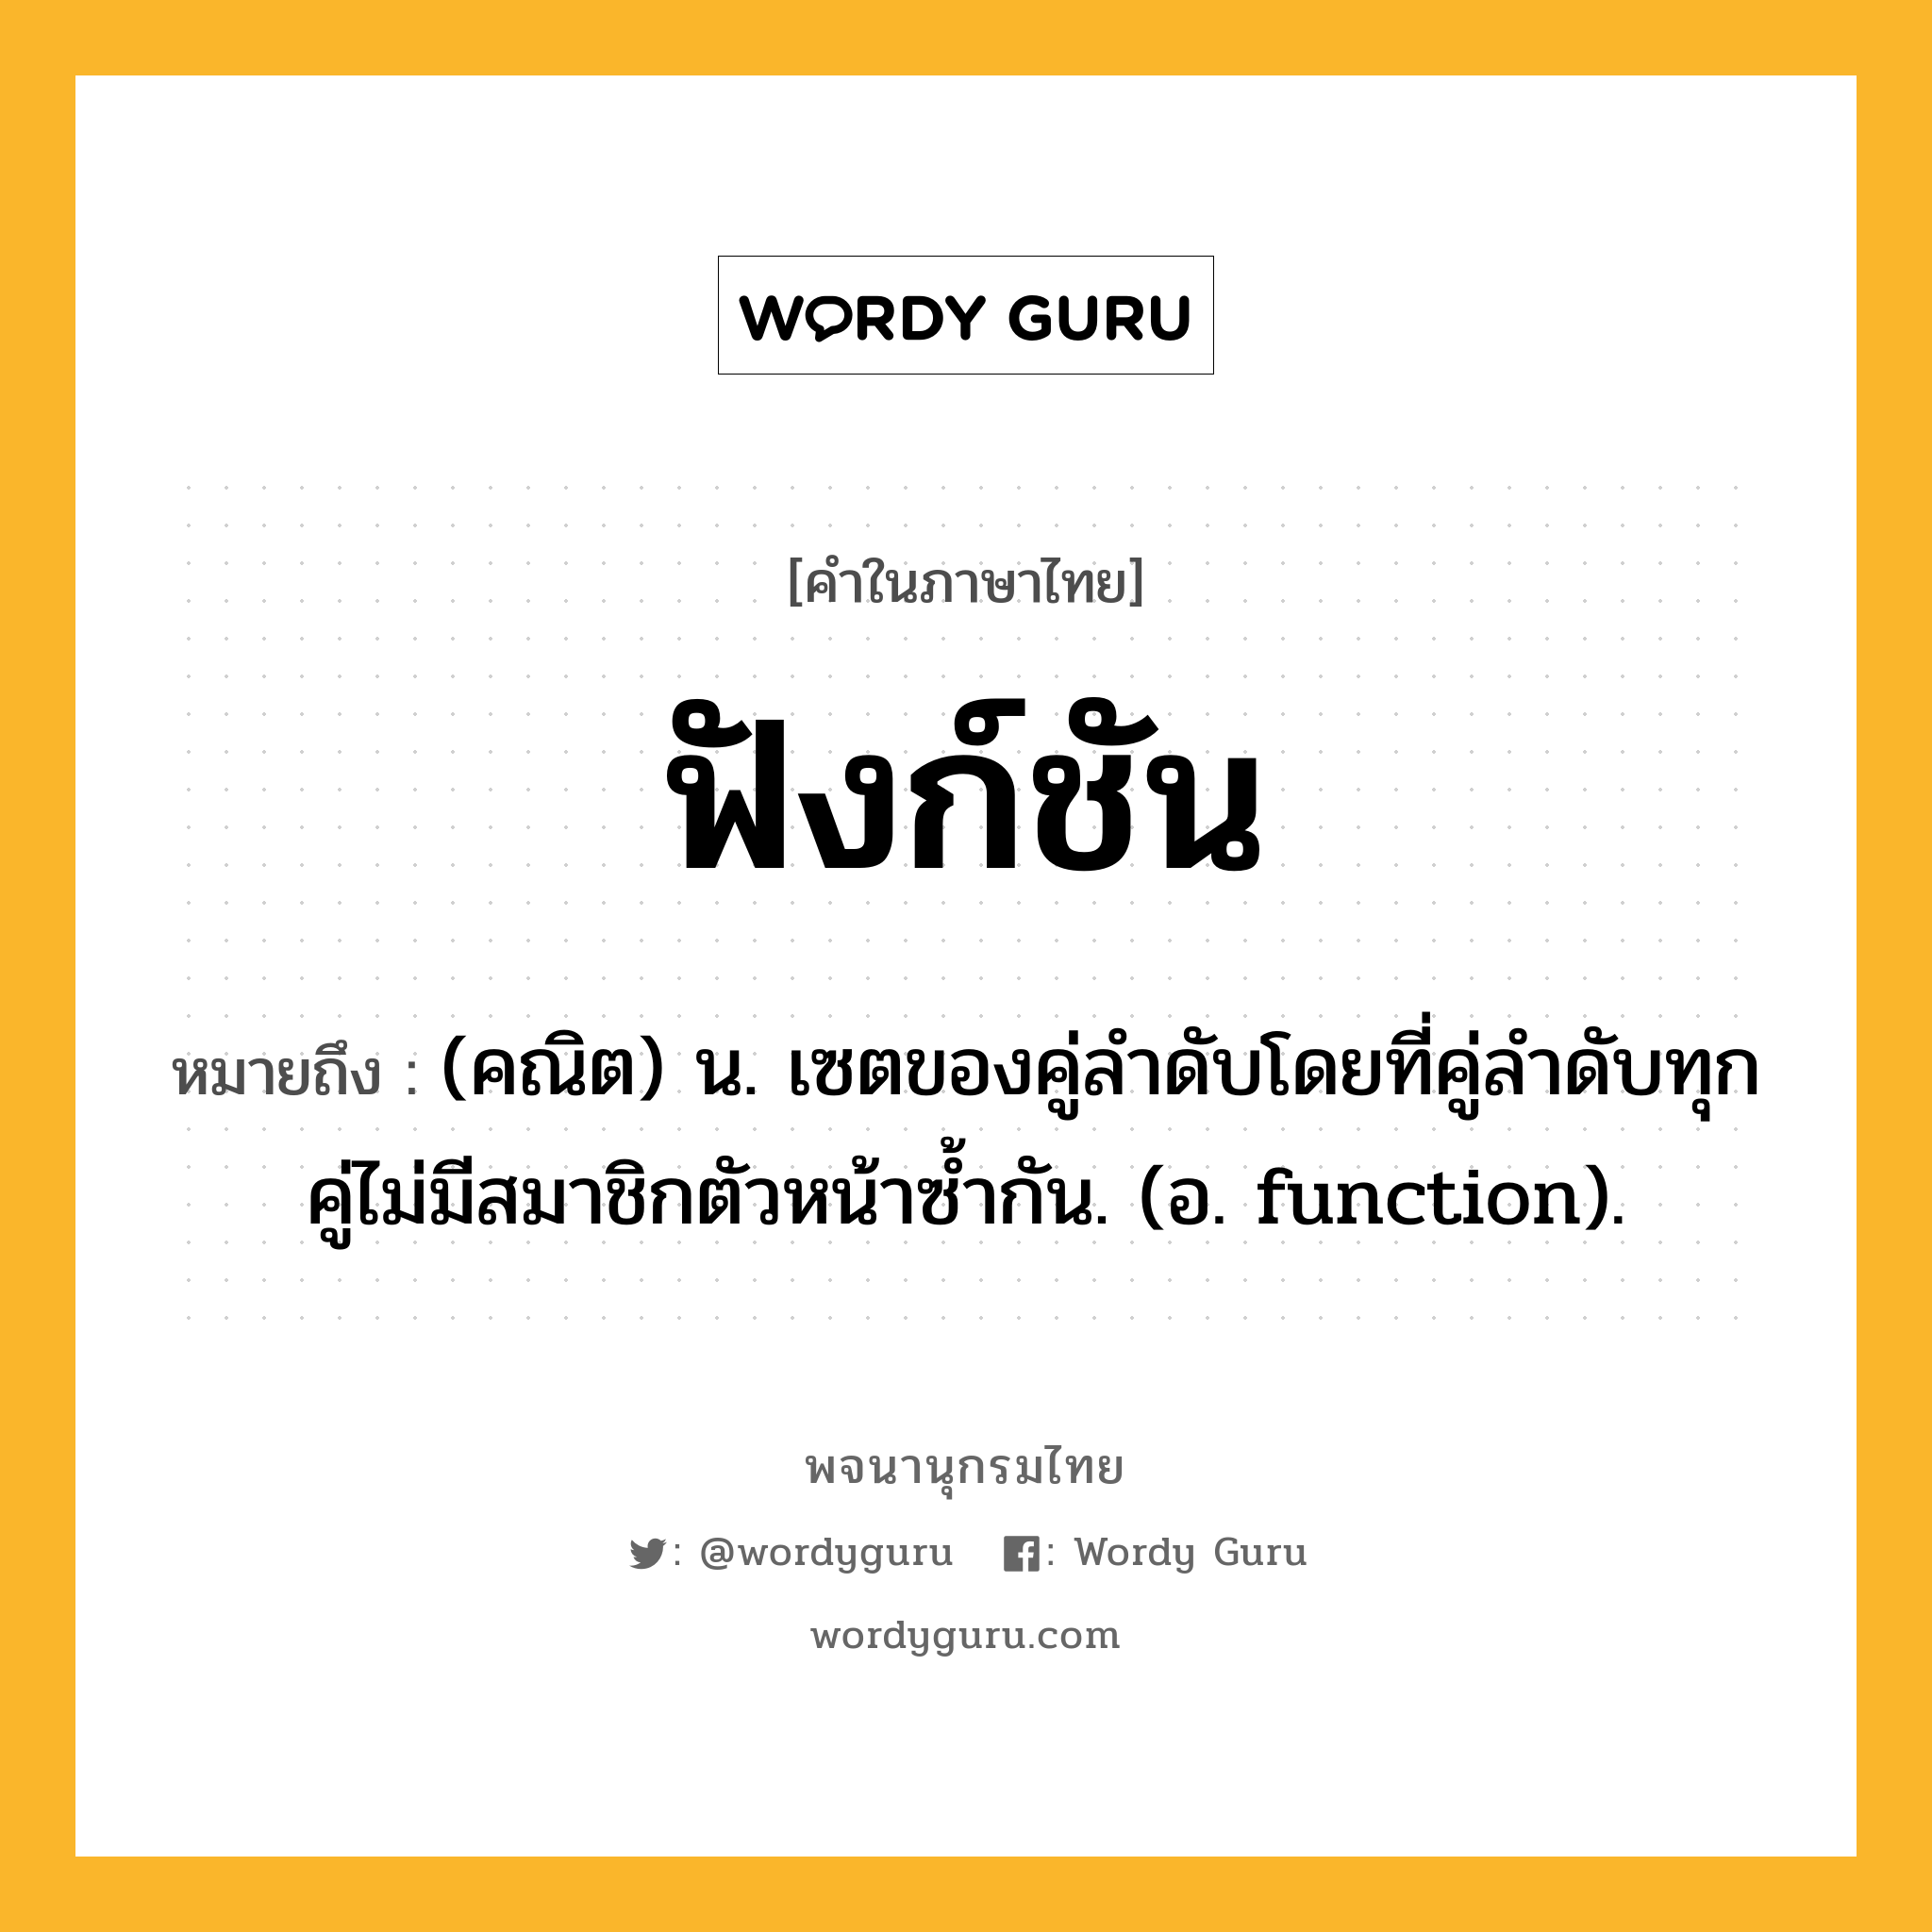 ฟังก์ชัน ความหมาย หมายถึงอะไร?, คำในภาษาไทย ฟังก์ชัน หมายถึง (คณิต) น. เซตของคู่ลําดับโดยที่คู่ลําดับทุกคู่ไม่มีสมาชิกตัวหน้าซํ้ากัน. (อ. function).